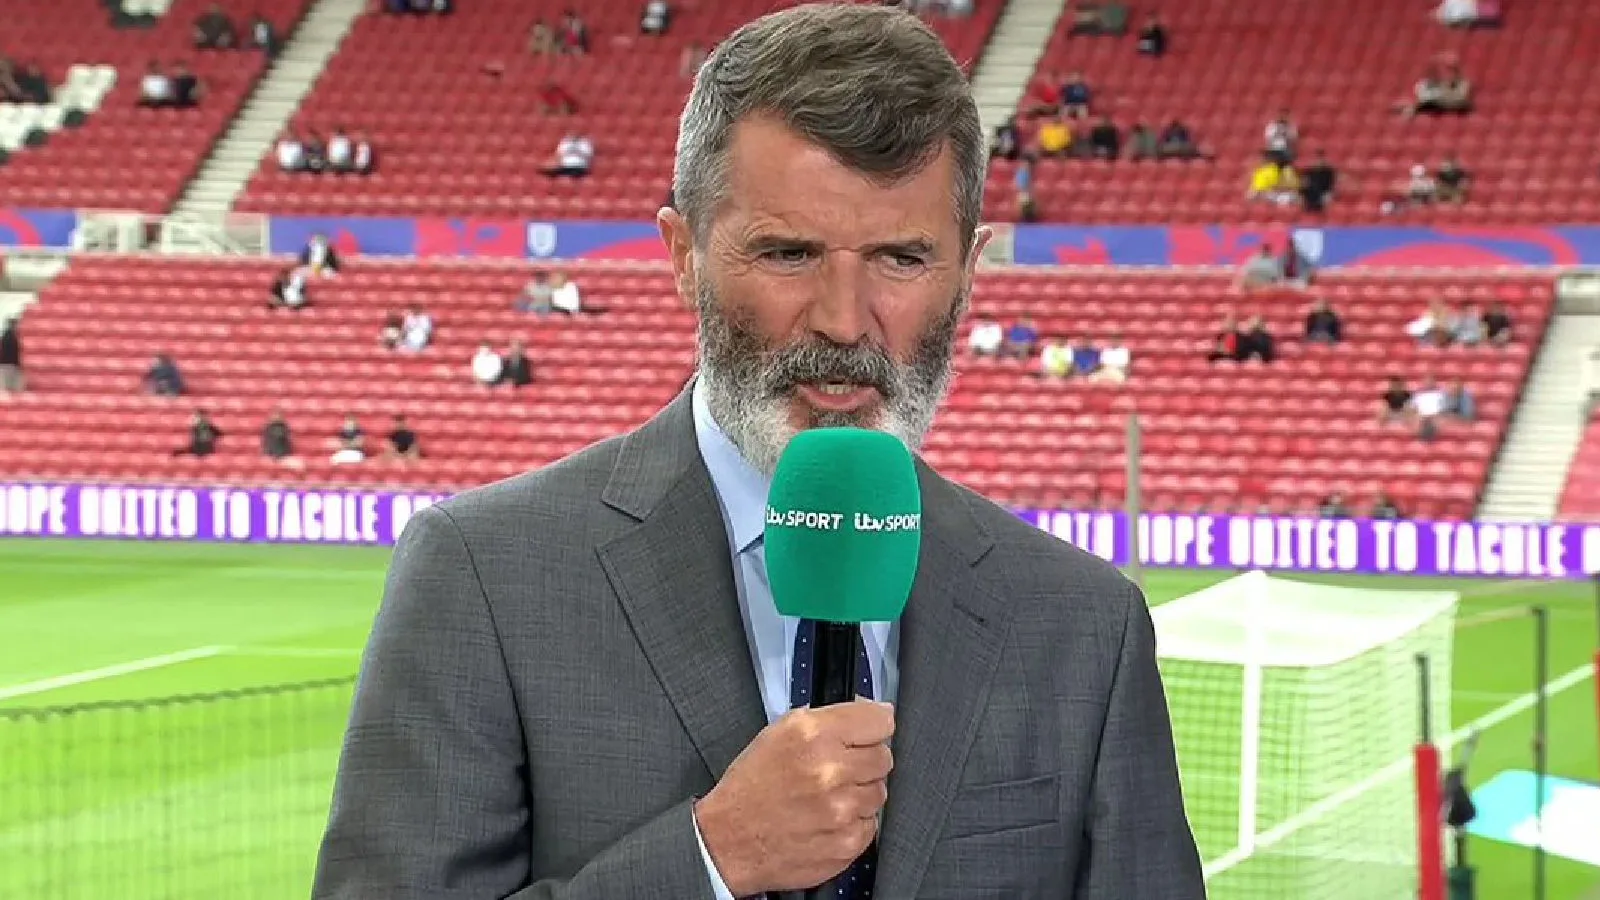 Roy Keane during punditry work for ITV